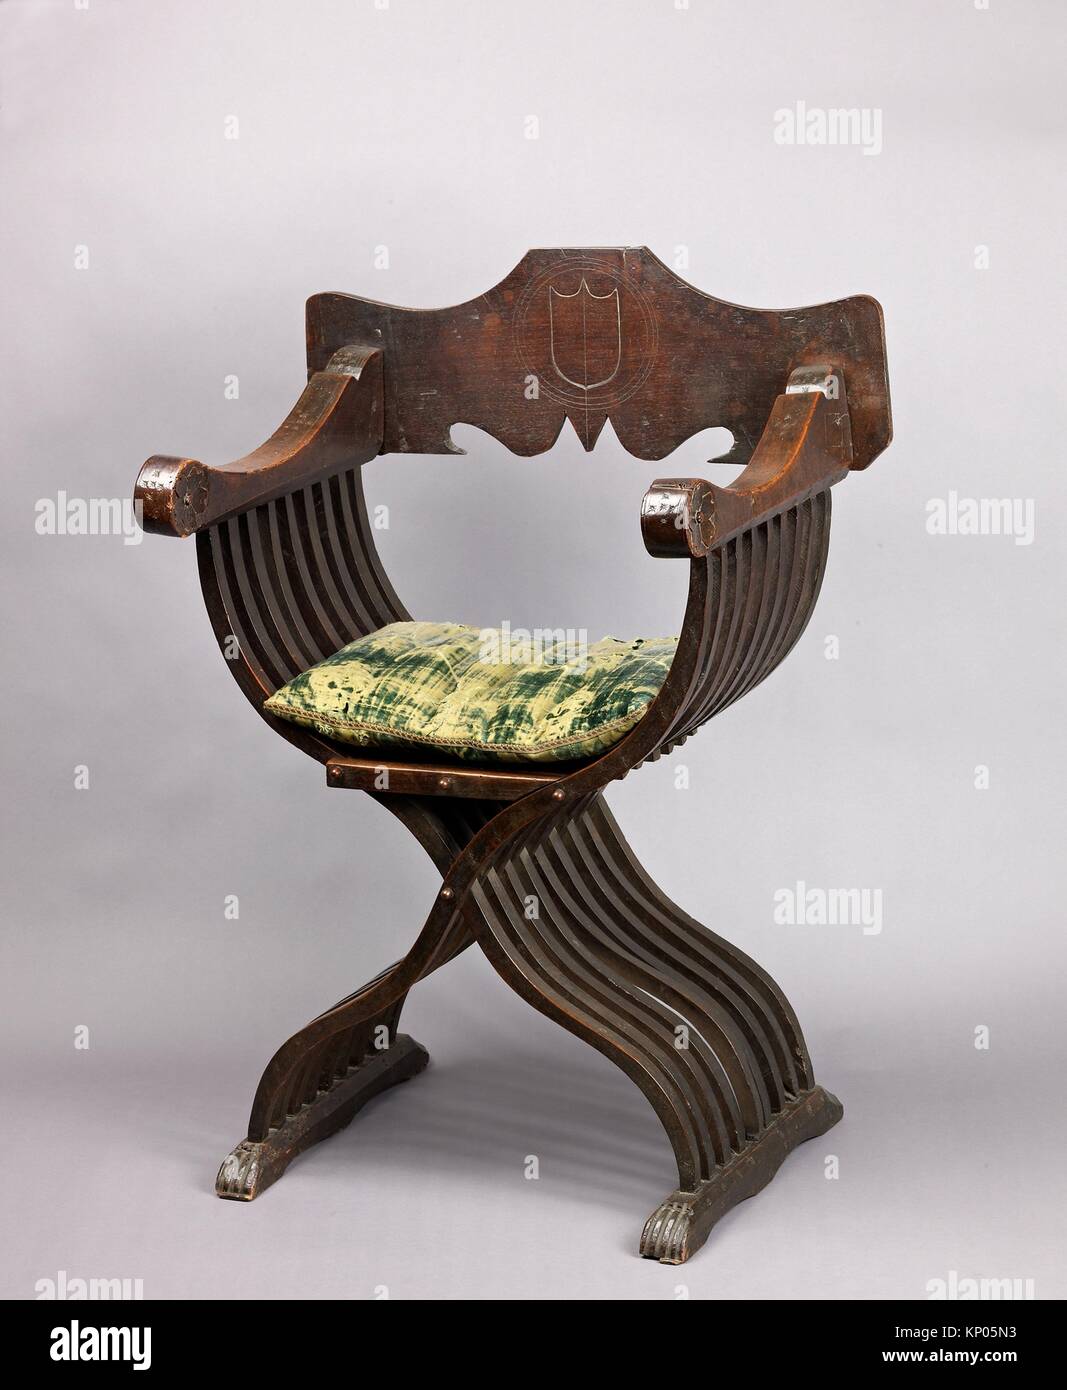 Partes de la silla de madera fotografías e imágenes de alta resolución -  Alamy